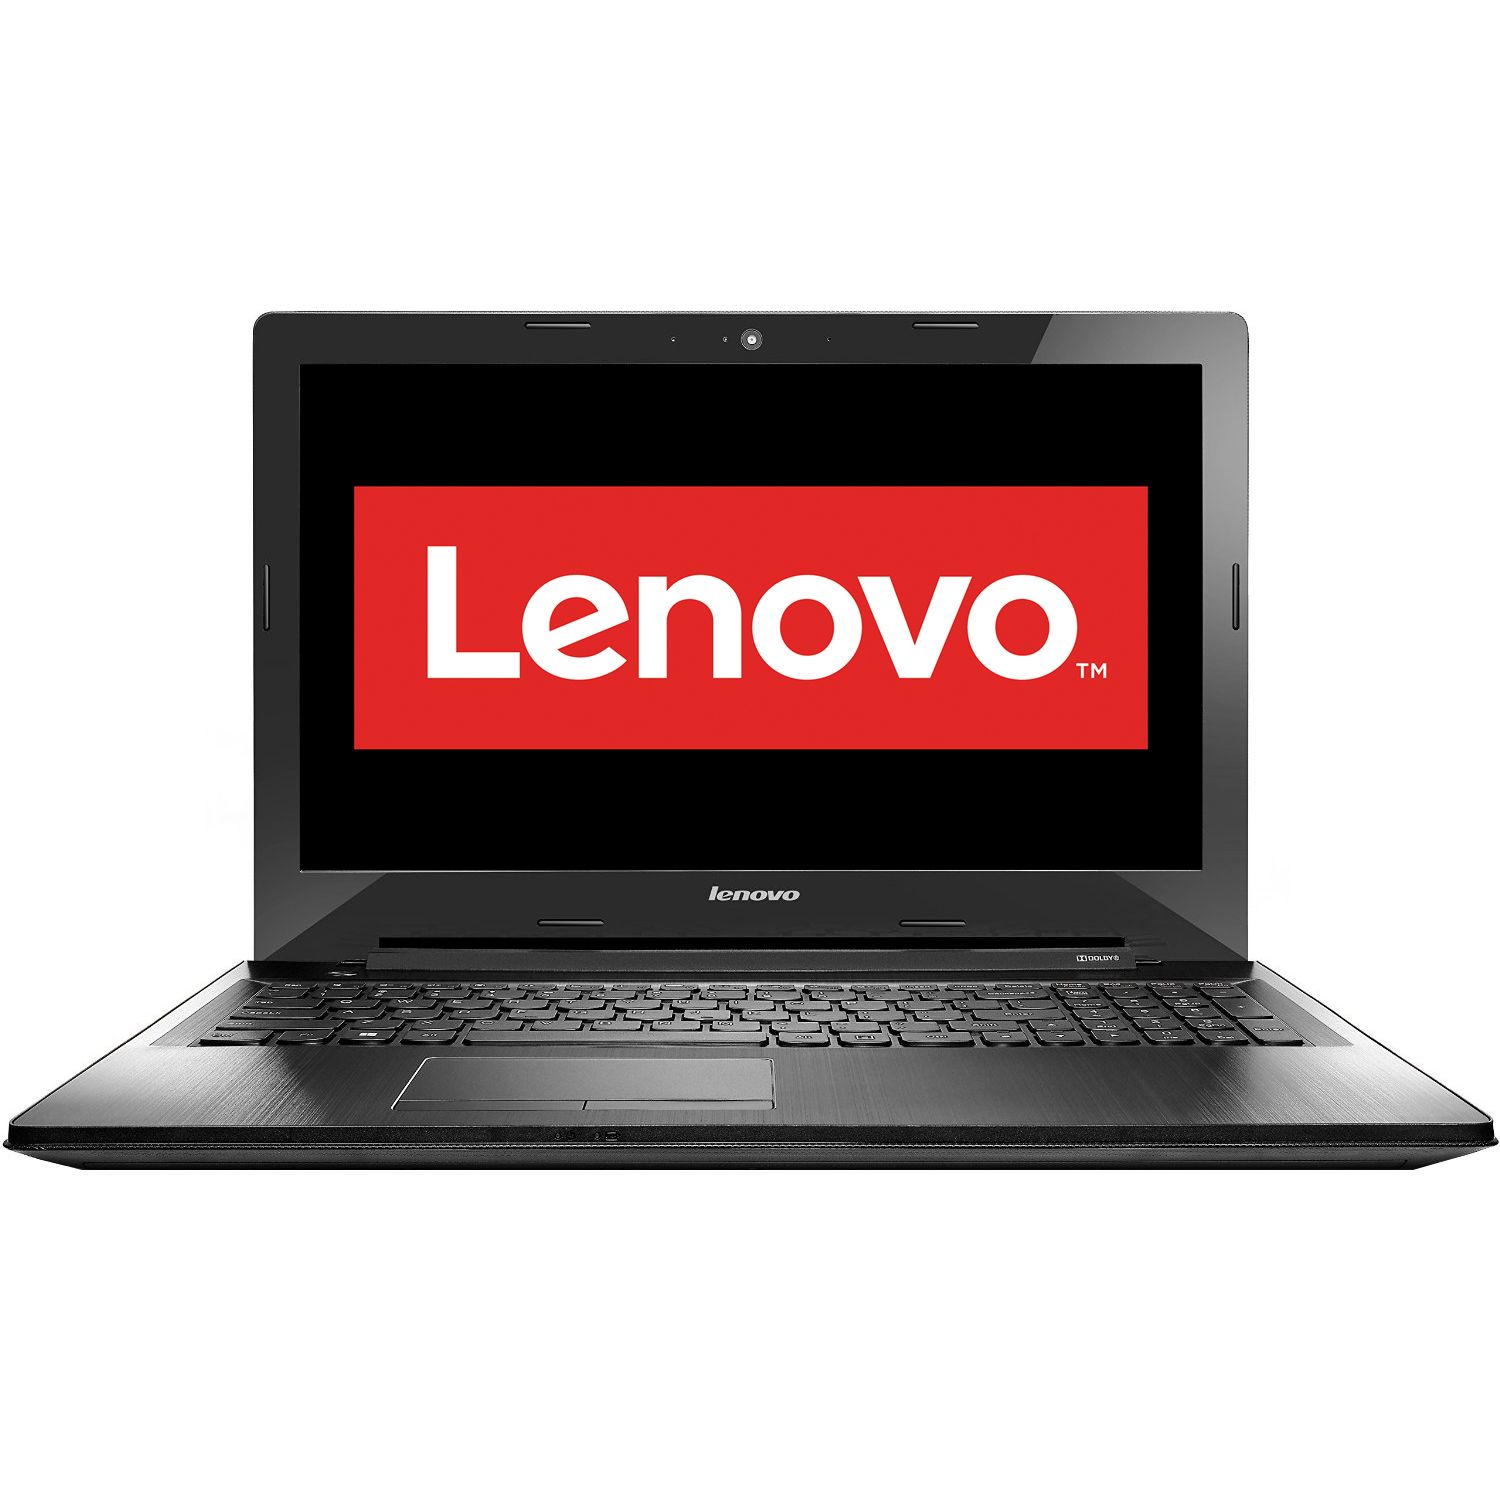 Laptop Lenovo IdeaPad G50-80, Intel Core i5-5200U, 4GB DDR3, HDD 1TB, AMD Radeon R5 M330 2GB, Free DOS